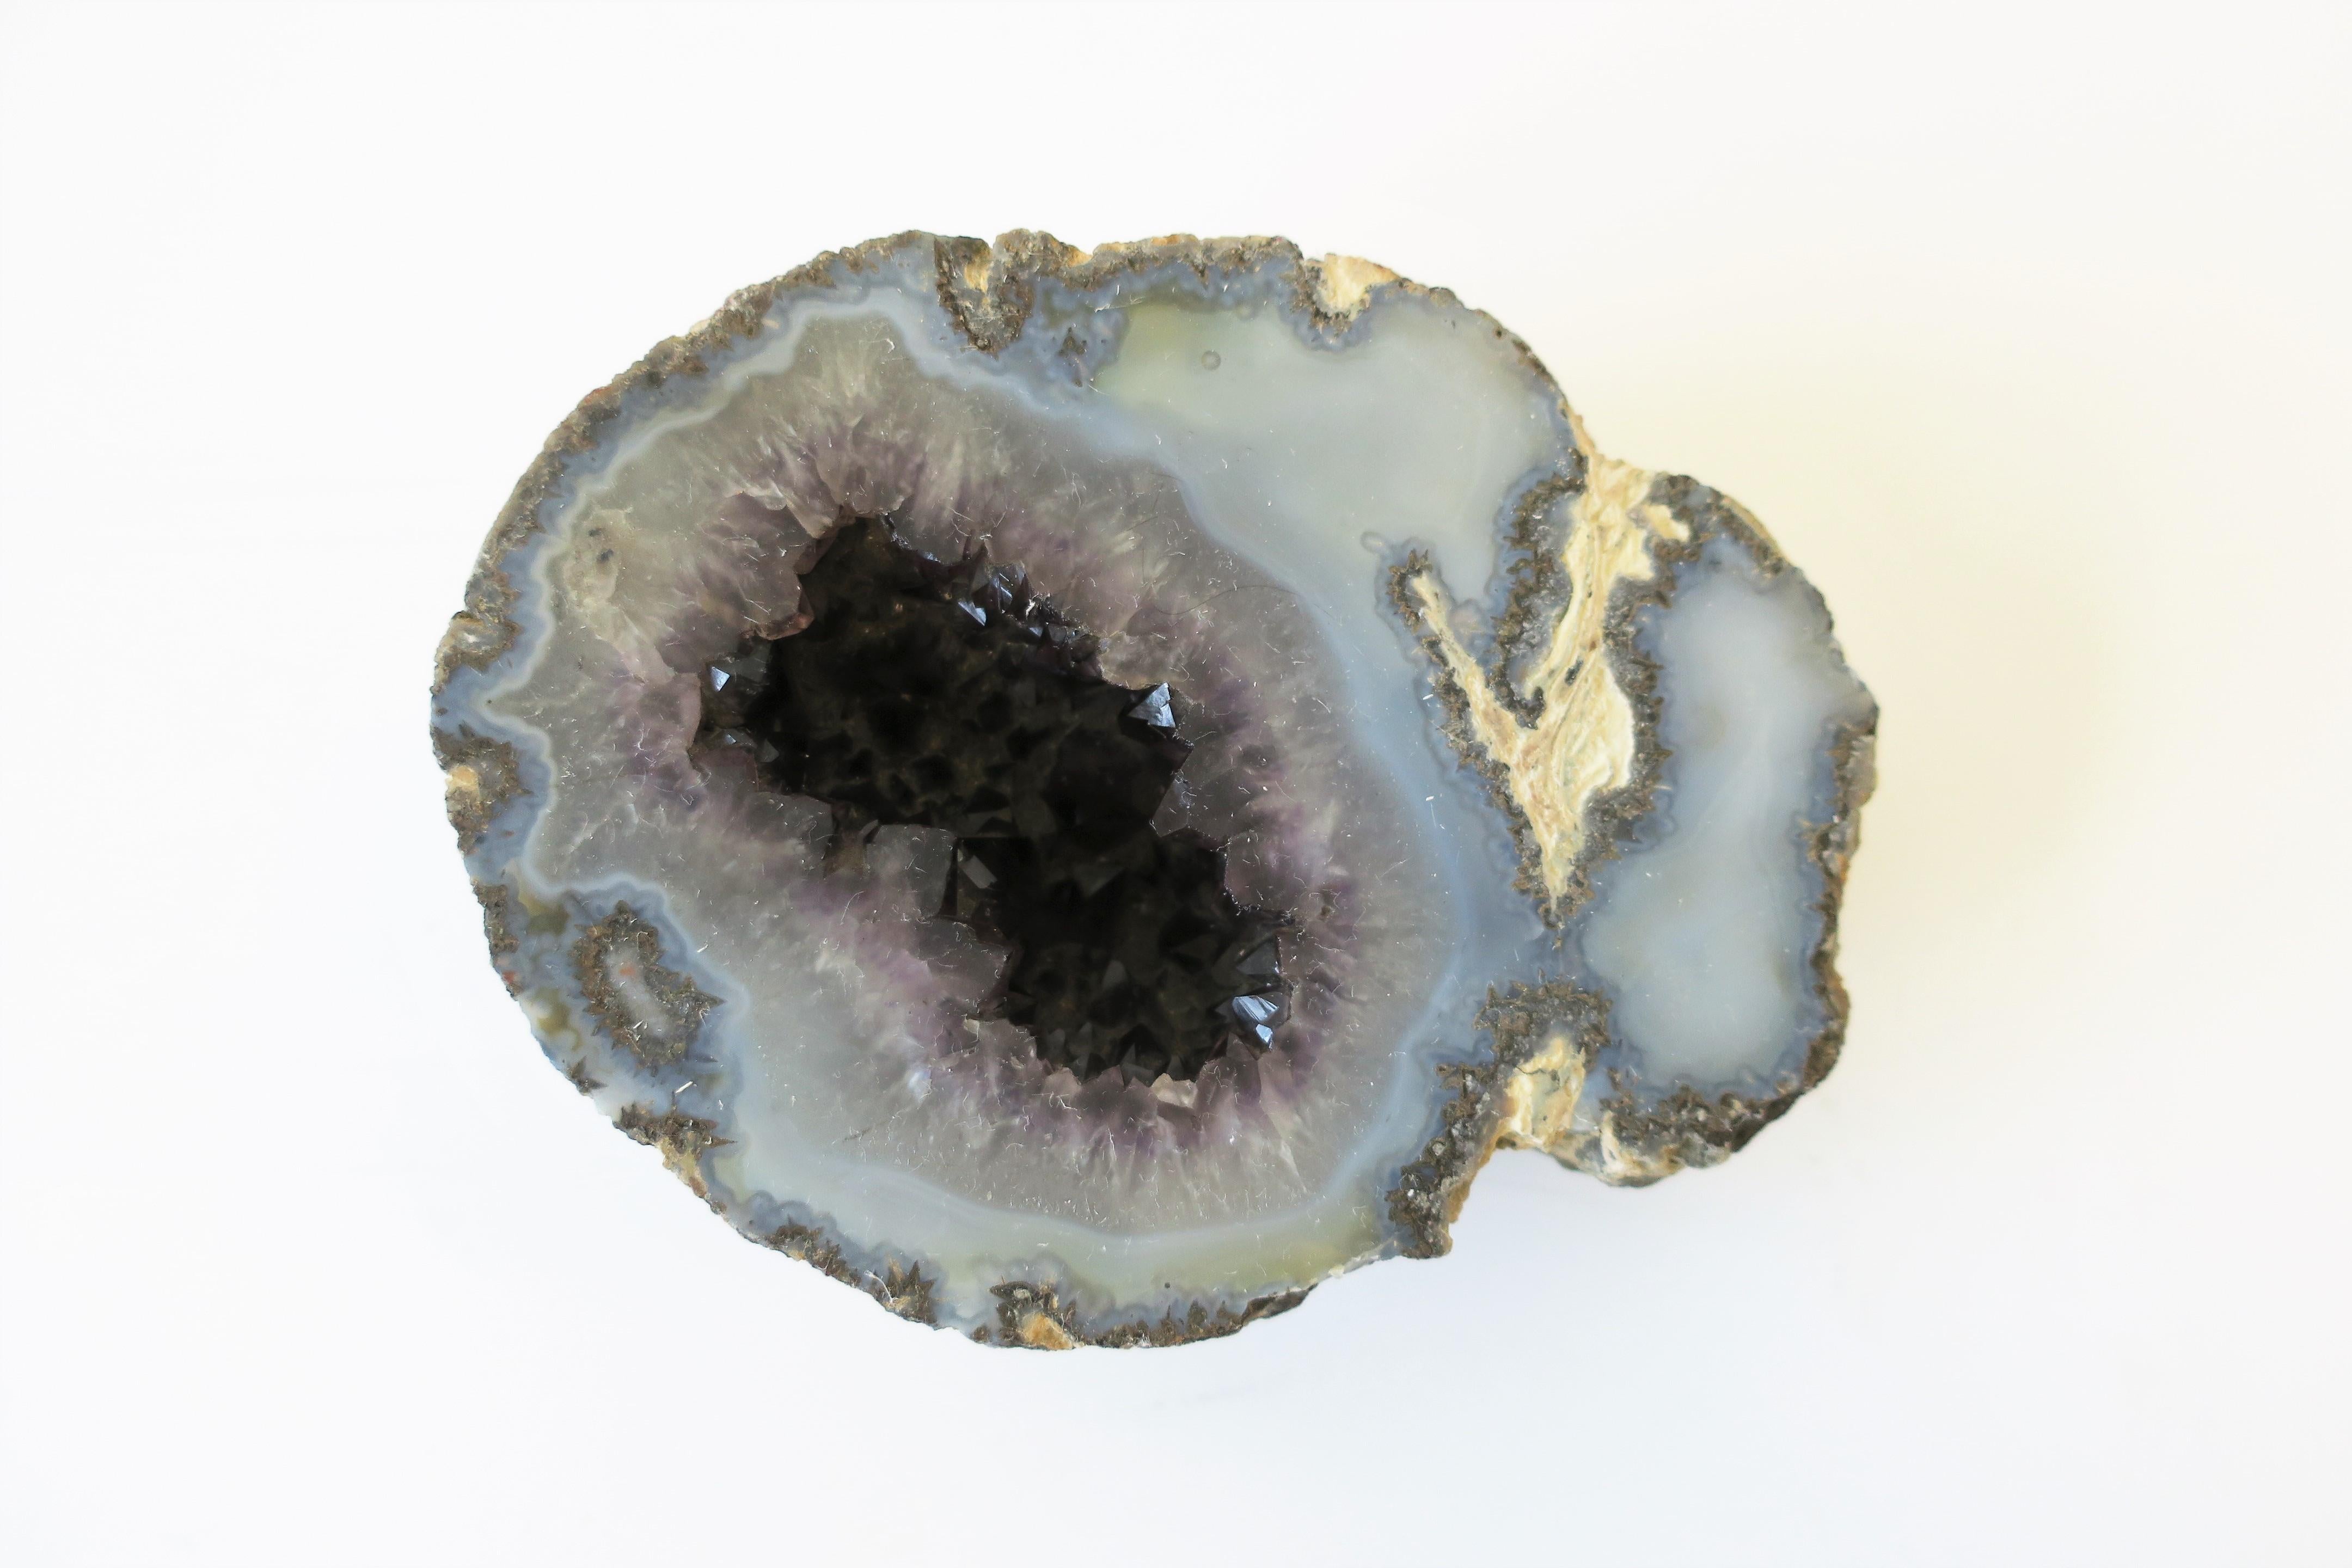 Ein hellblauer und lila Amethyst Geode natürliche Probe dekoratives Objekt oder Briefbeschwerer. Das Stück hat eine hellblaue Oberfläche mit einer tiefvioletten Amethystkruste in der Kluft. Abmessungen: 4